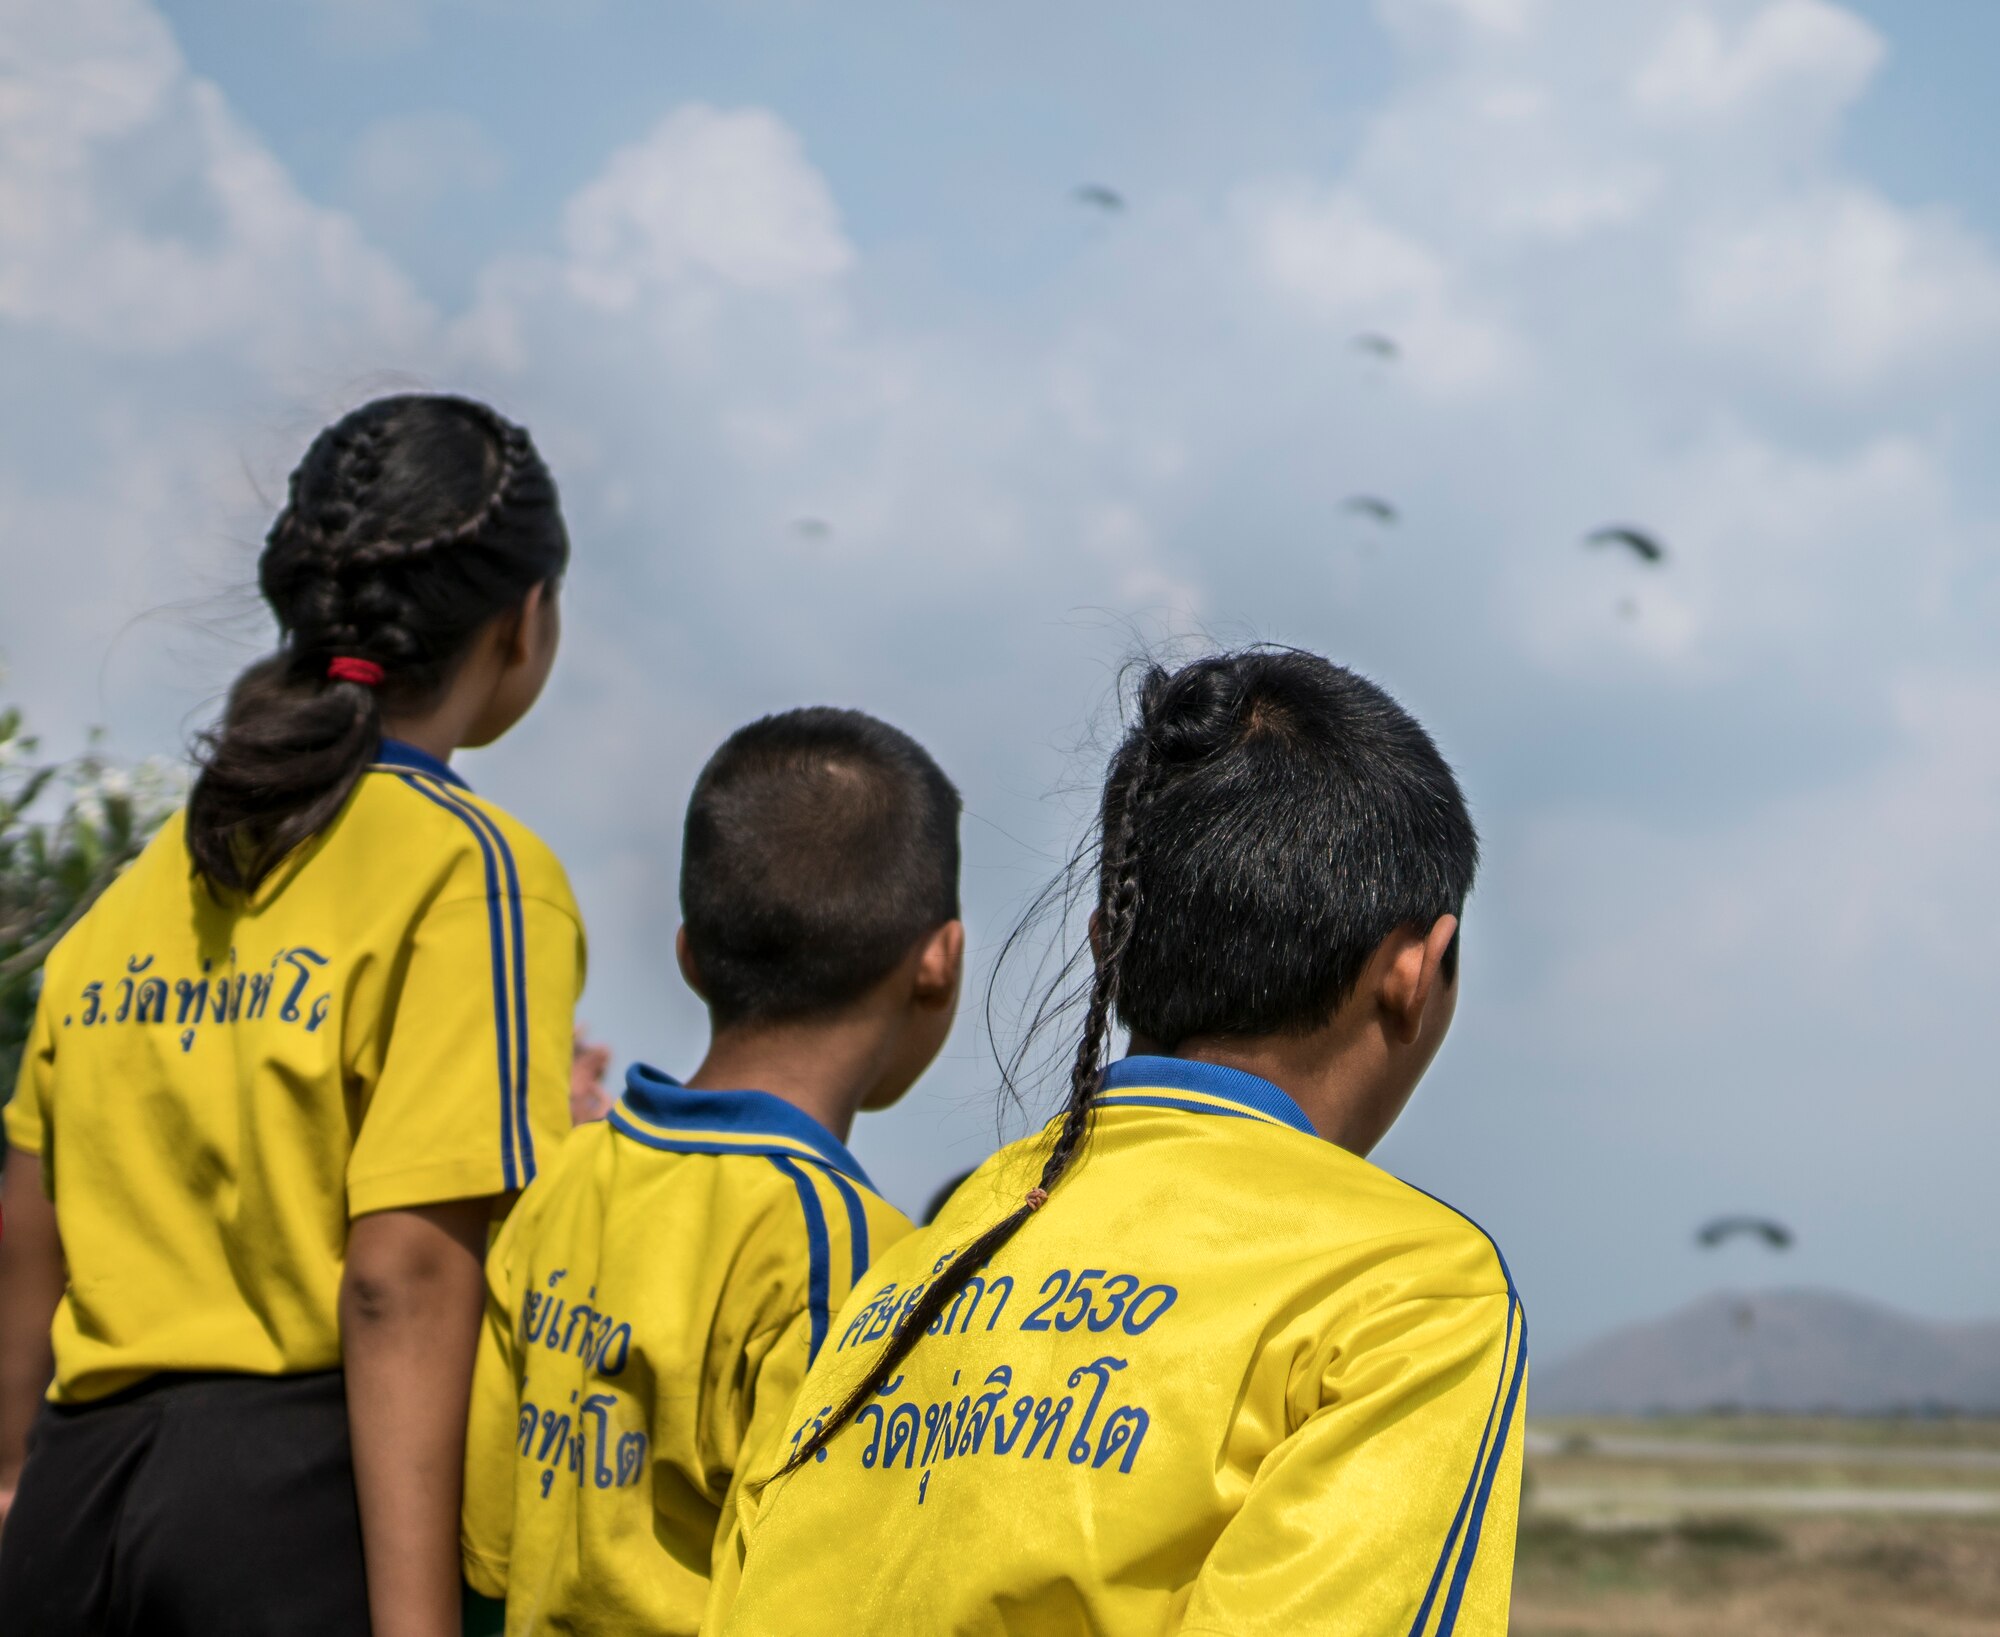 Airmen bring charity to local Thai school